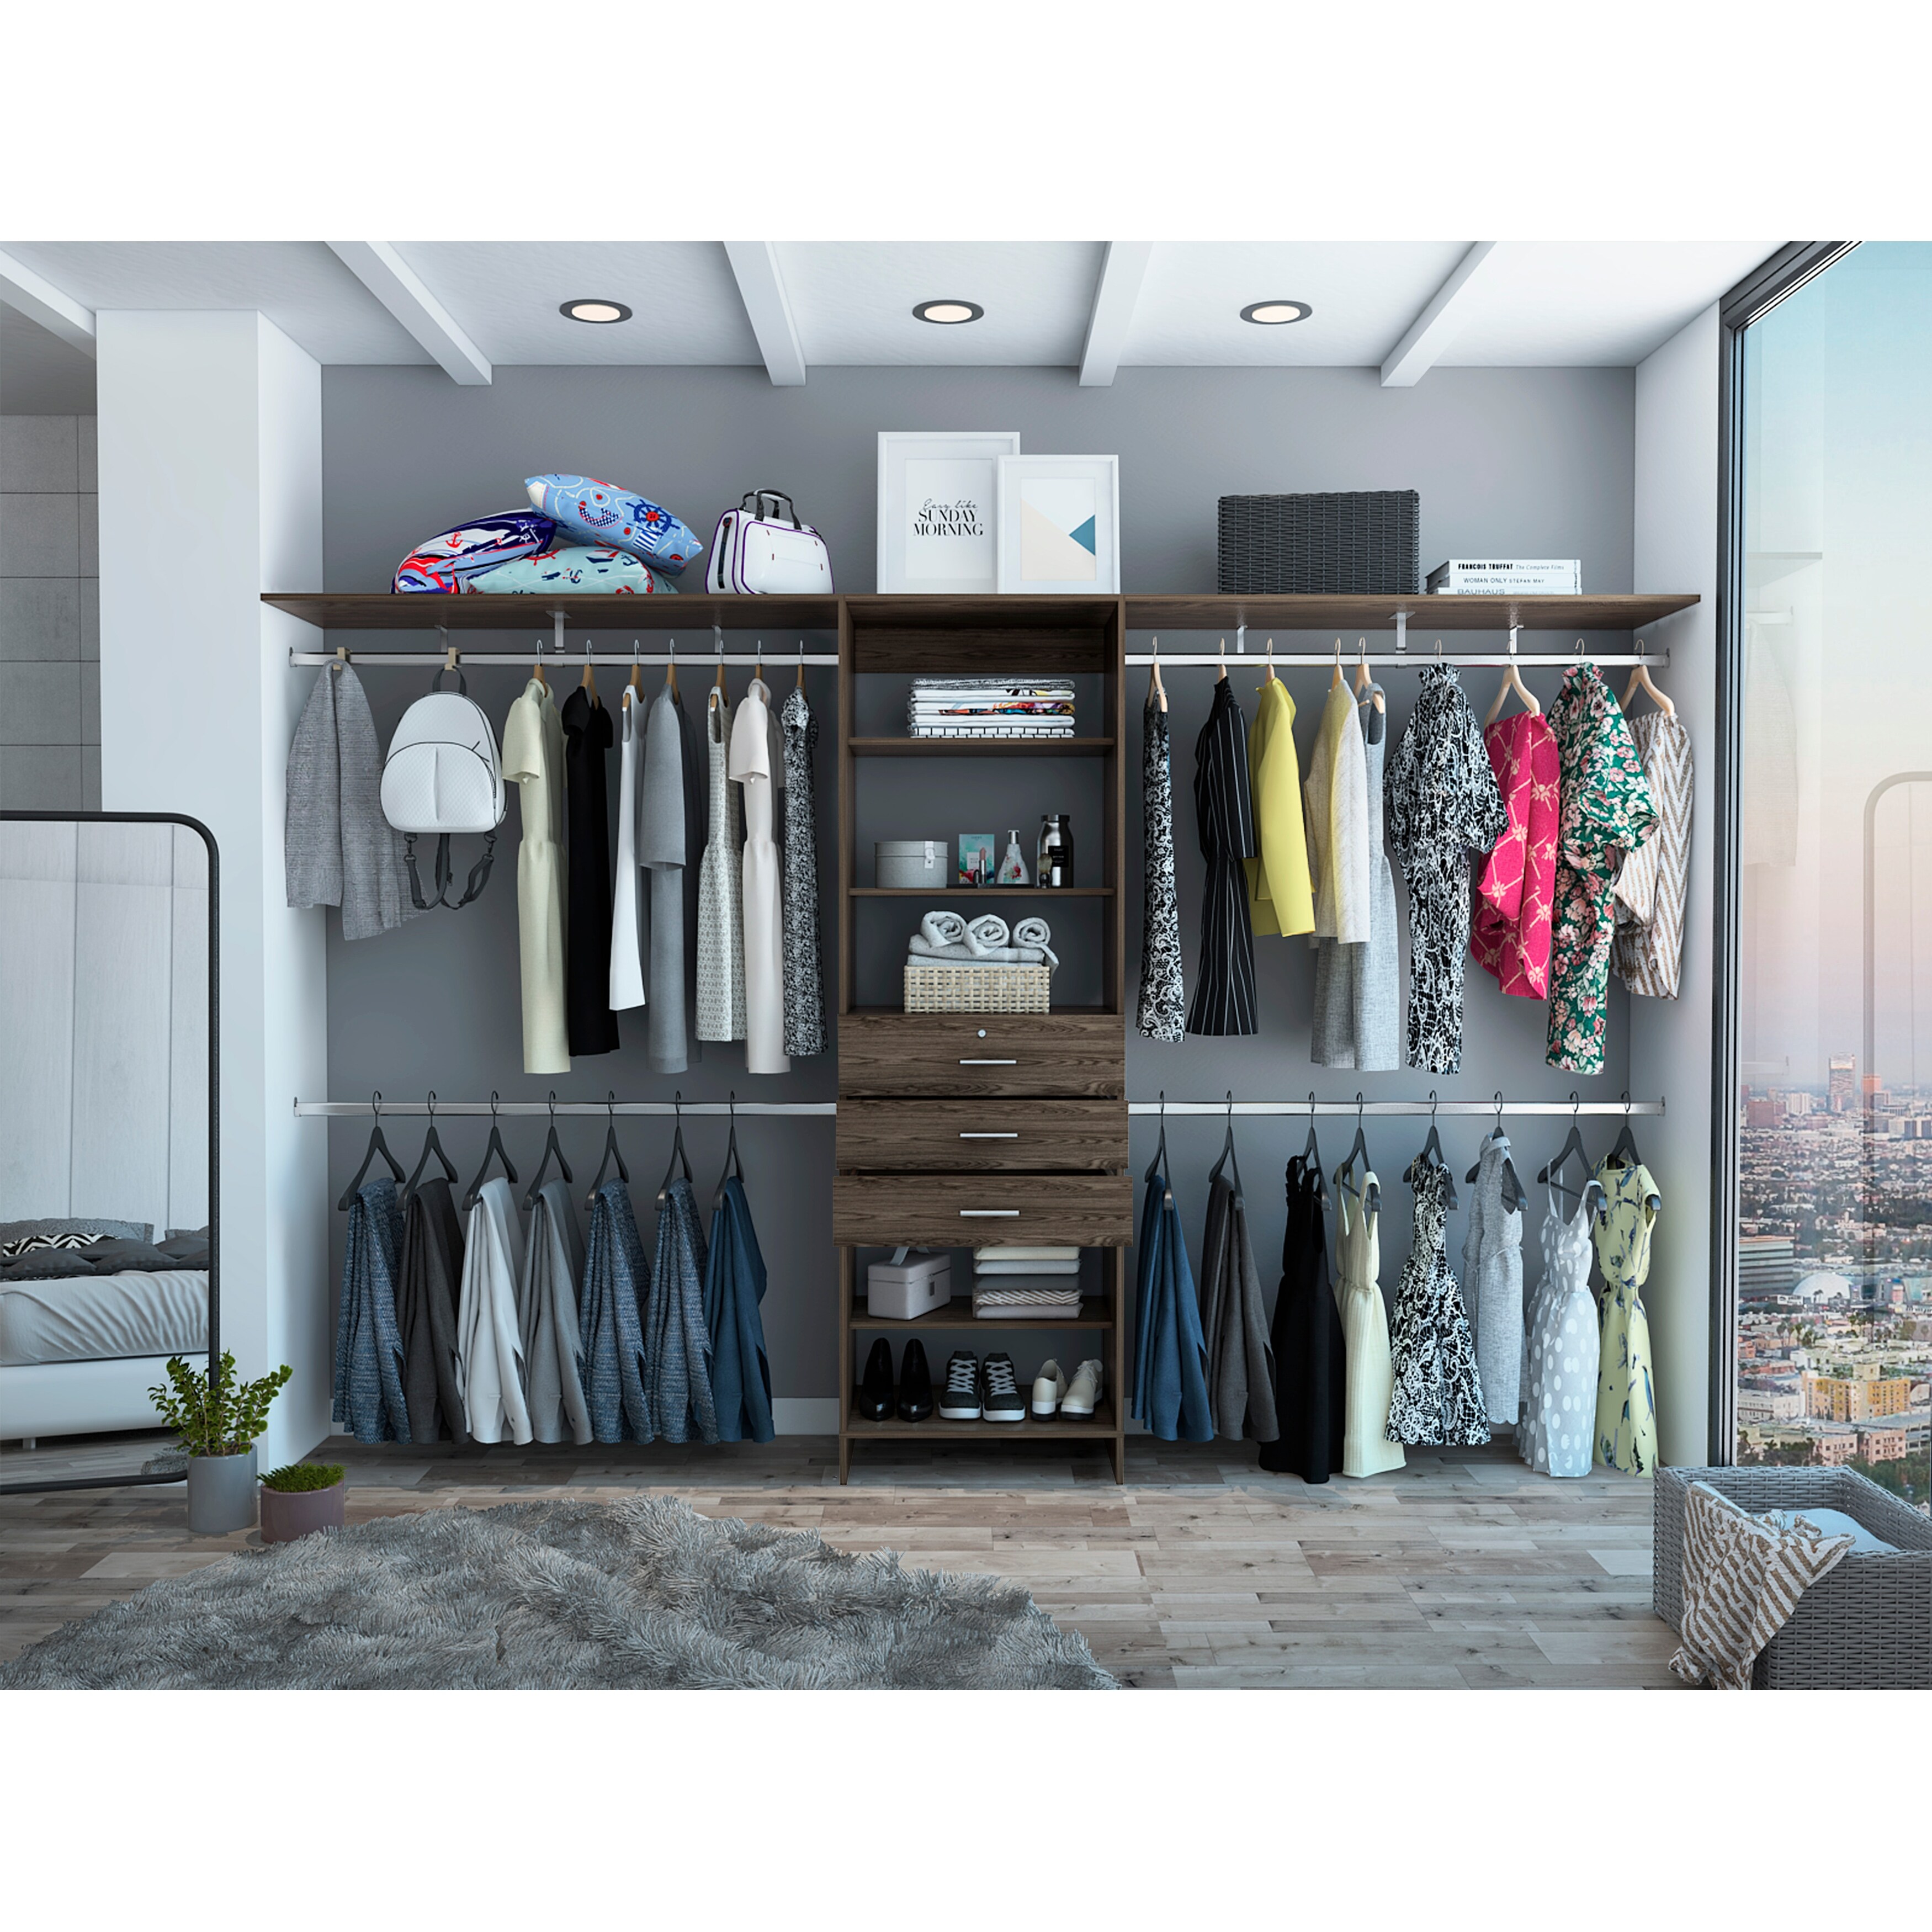 Narrow Linen Closet Storage Options Made Easy - Sabrinas Organizing